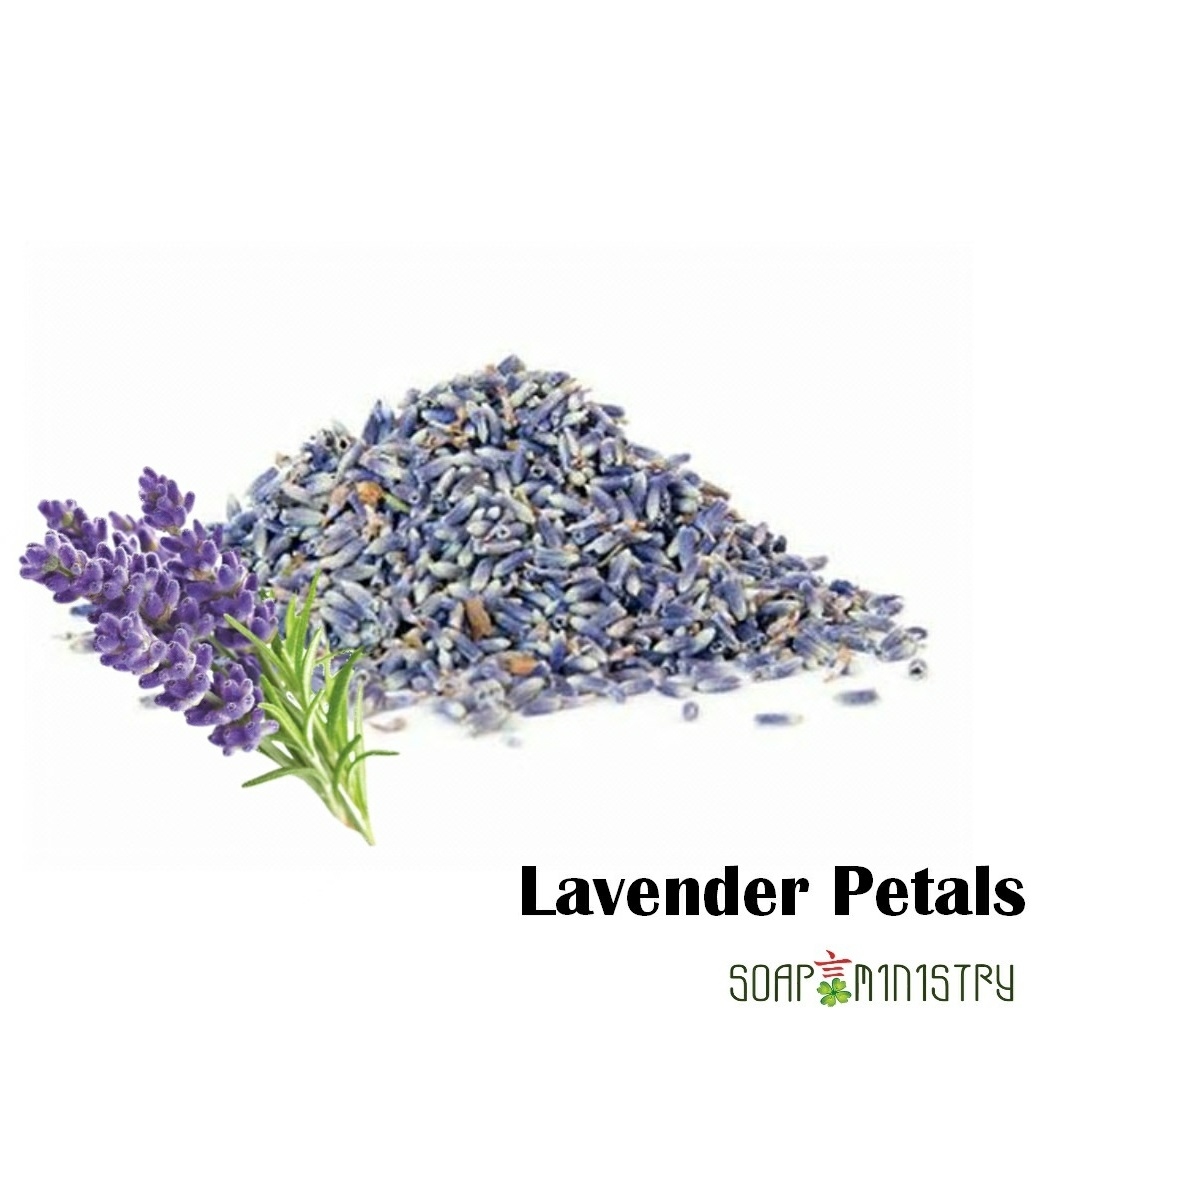 Lavender Petals 500g